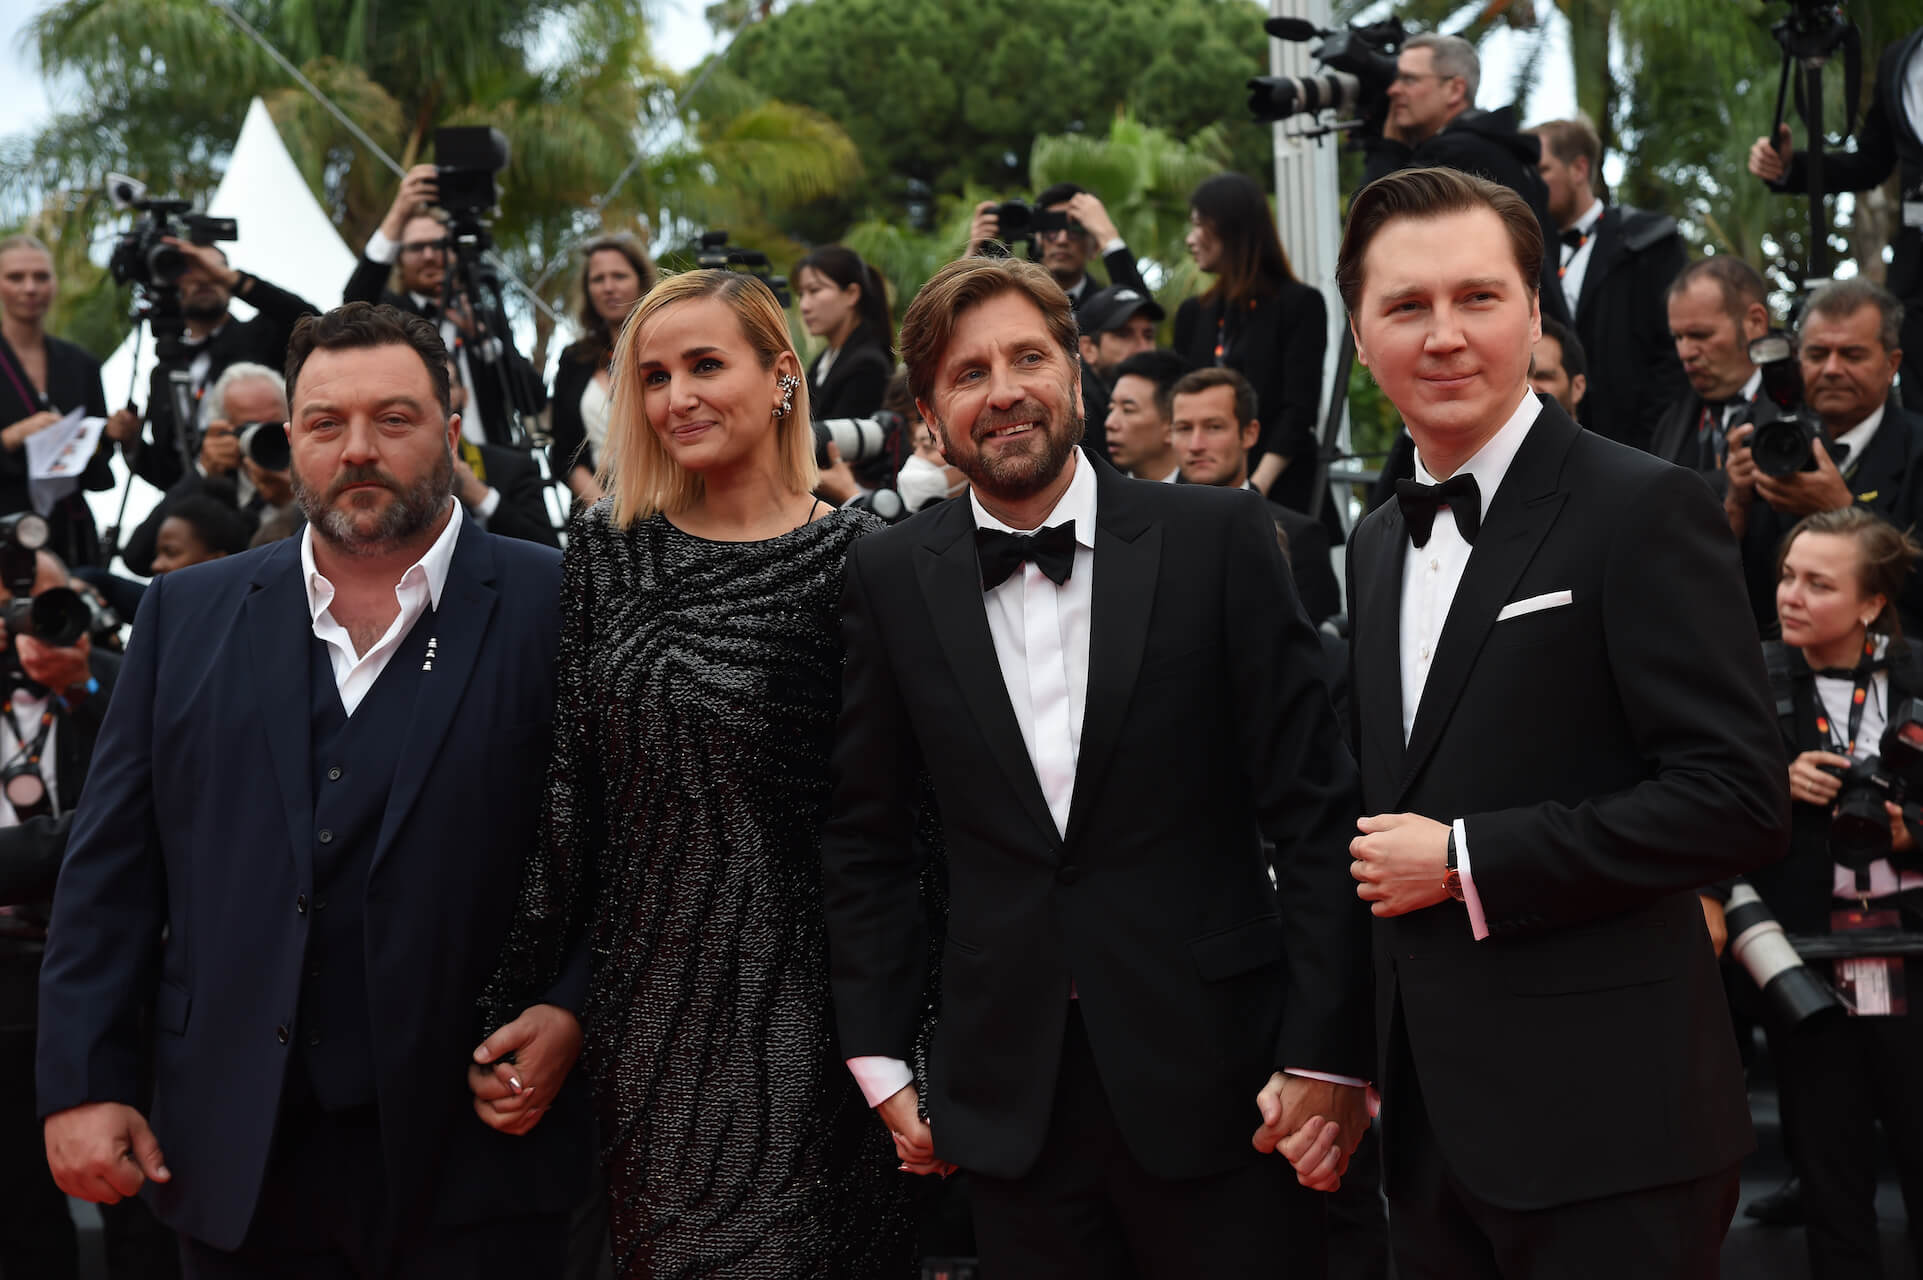 Le jury du 76e Festival de Cannes